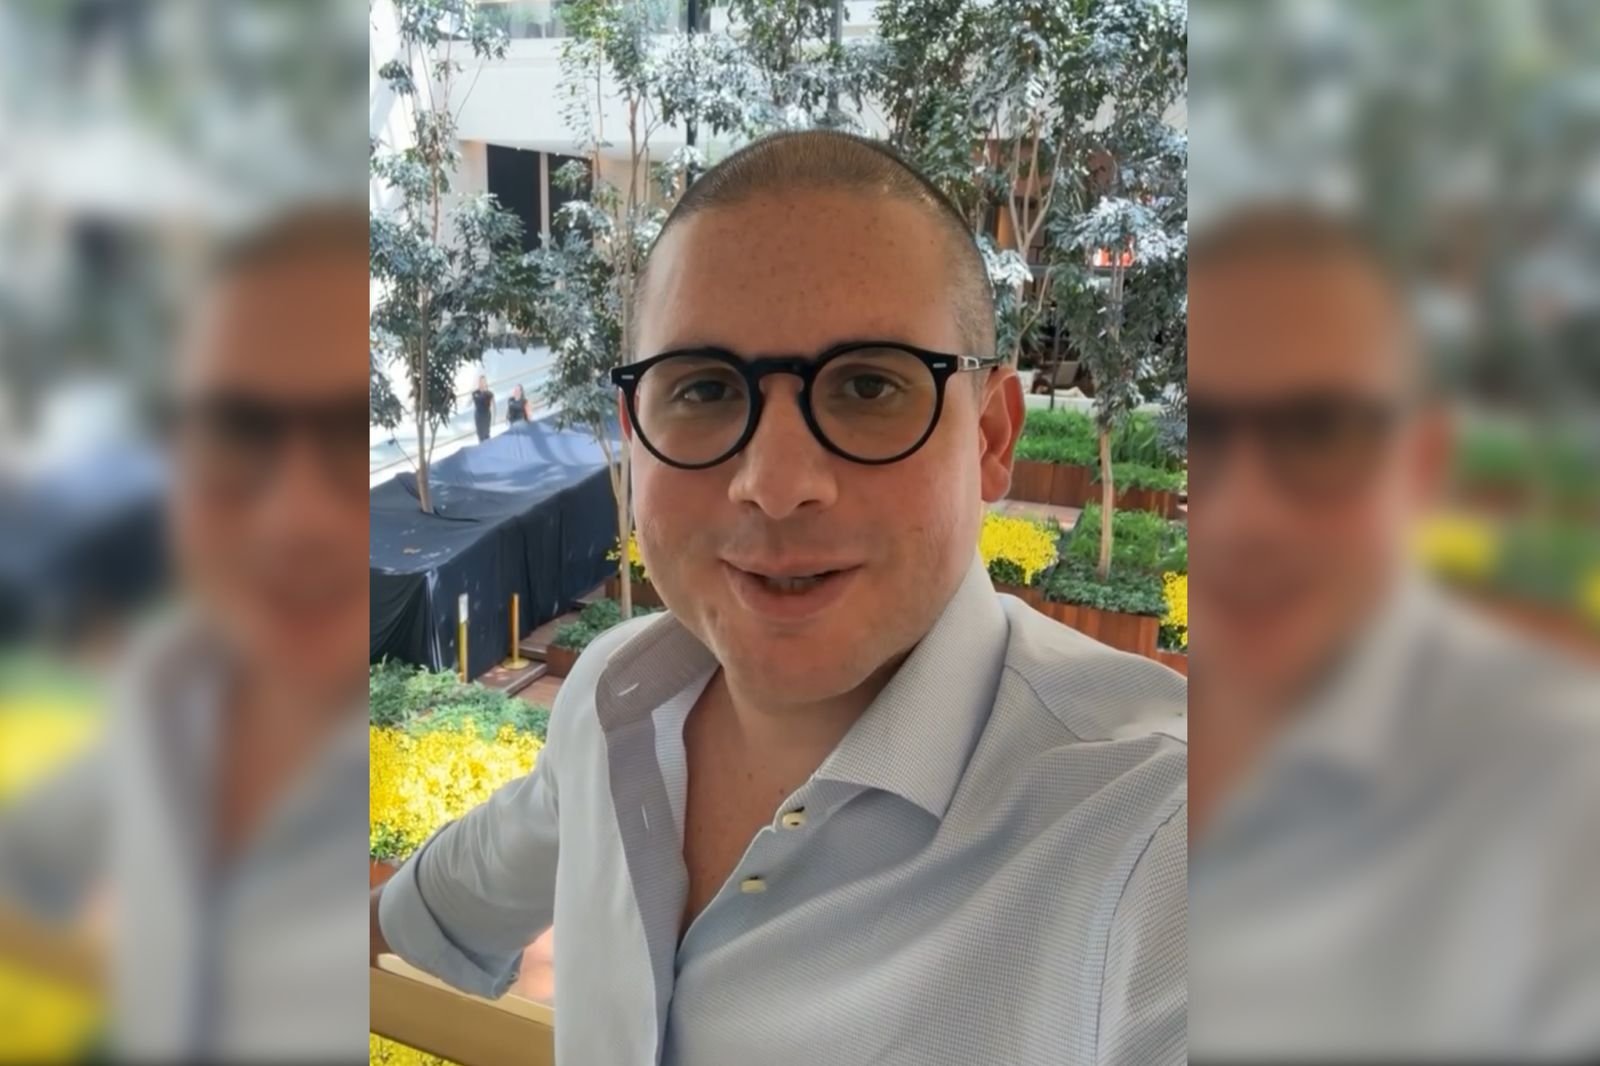 Hugo Motta justifica ‘novo visual’ nas redes sociais após passar por procedimento cirúrgico: “precisando diminuir a careca”